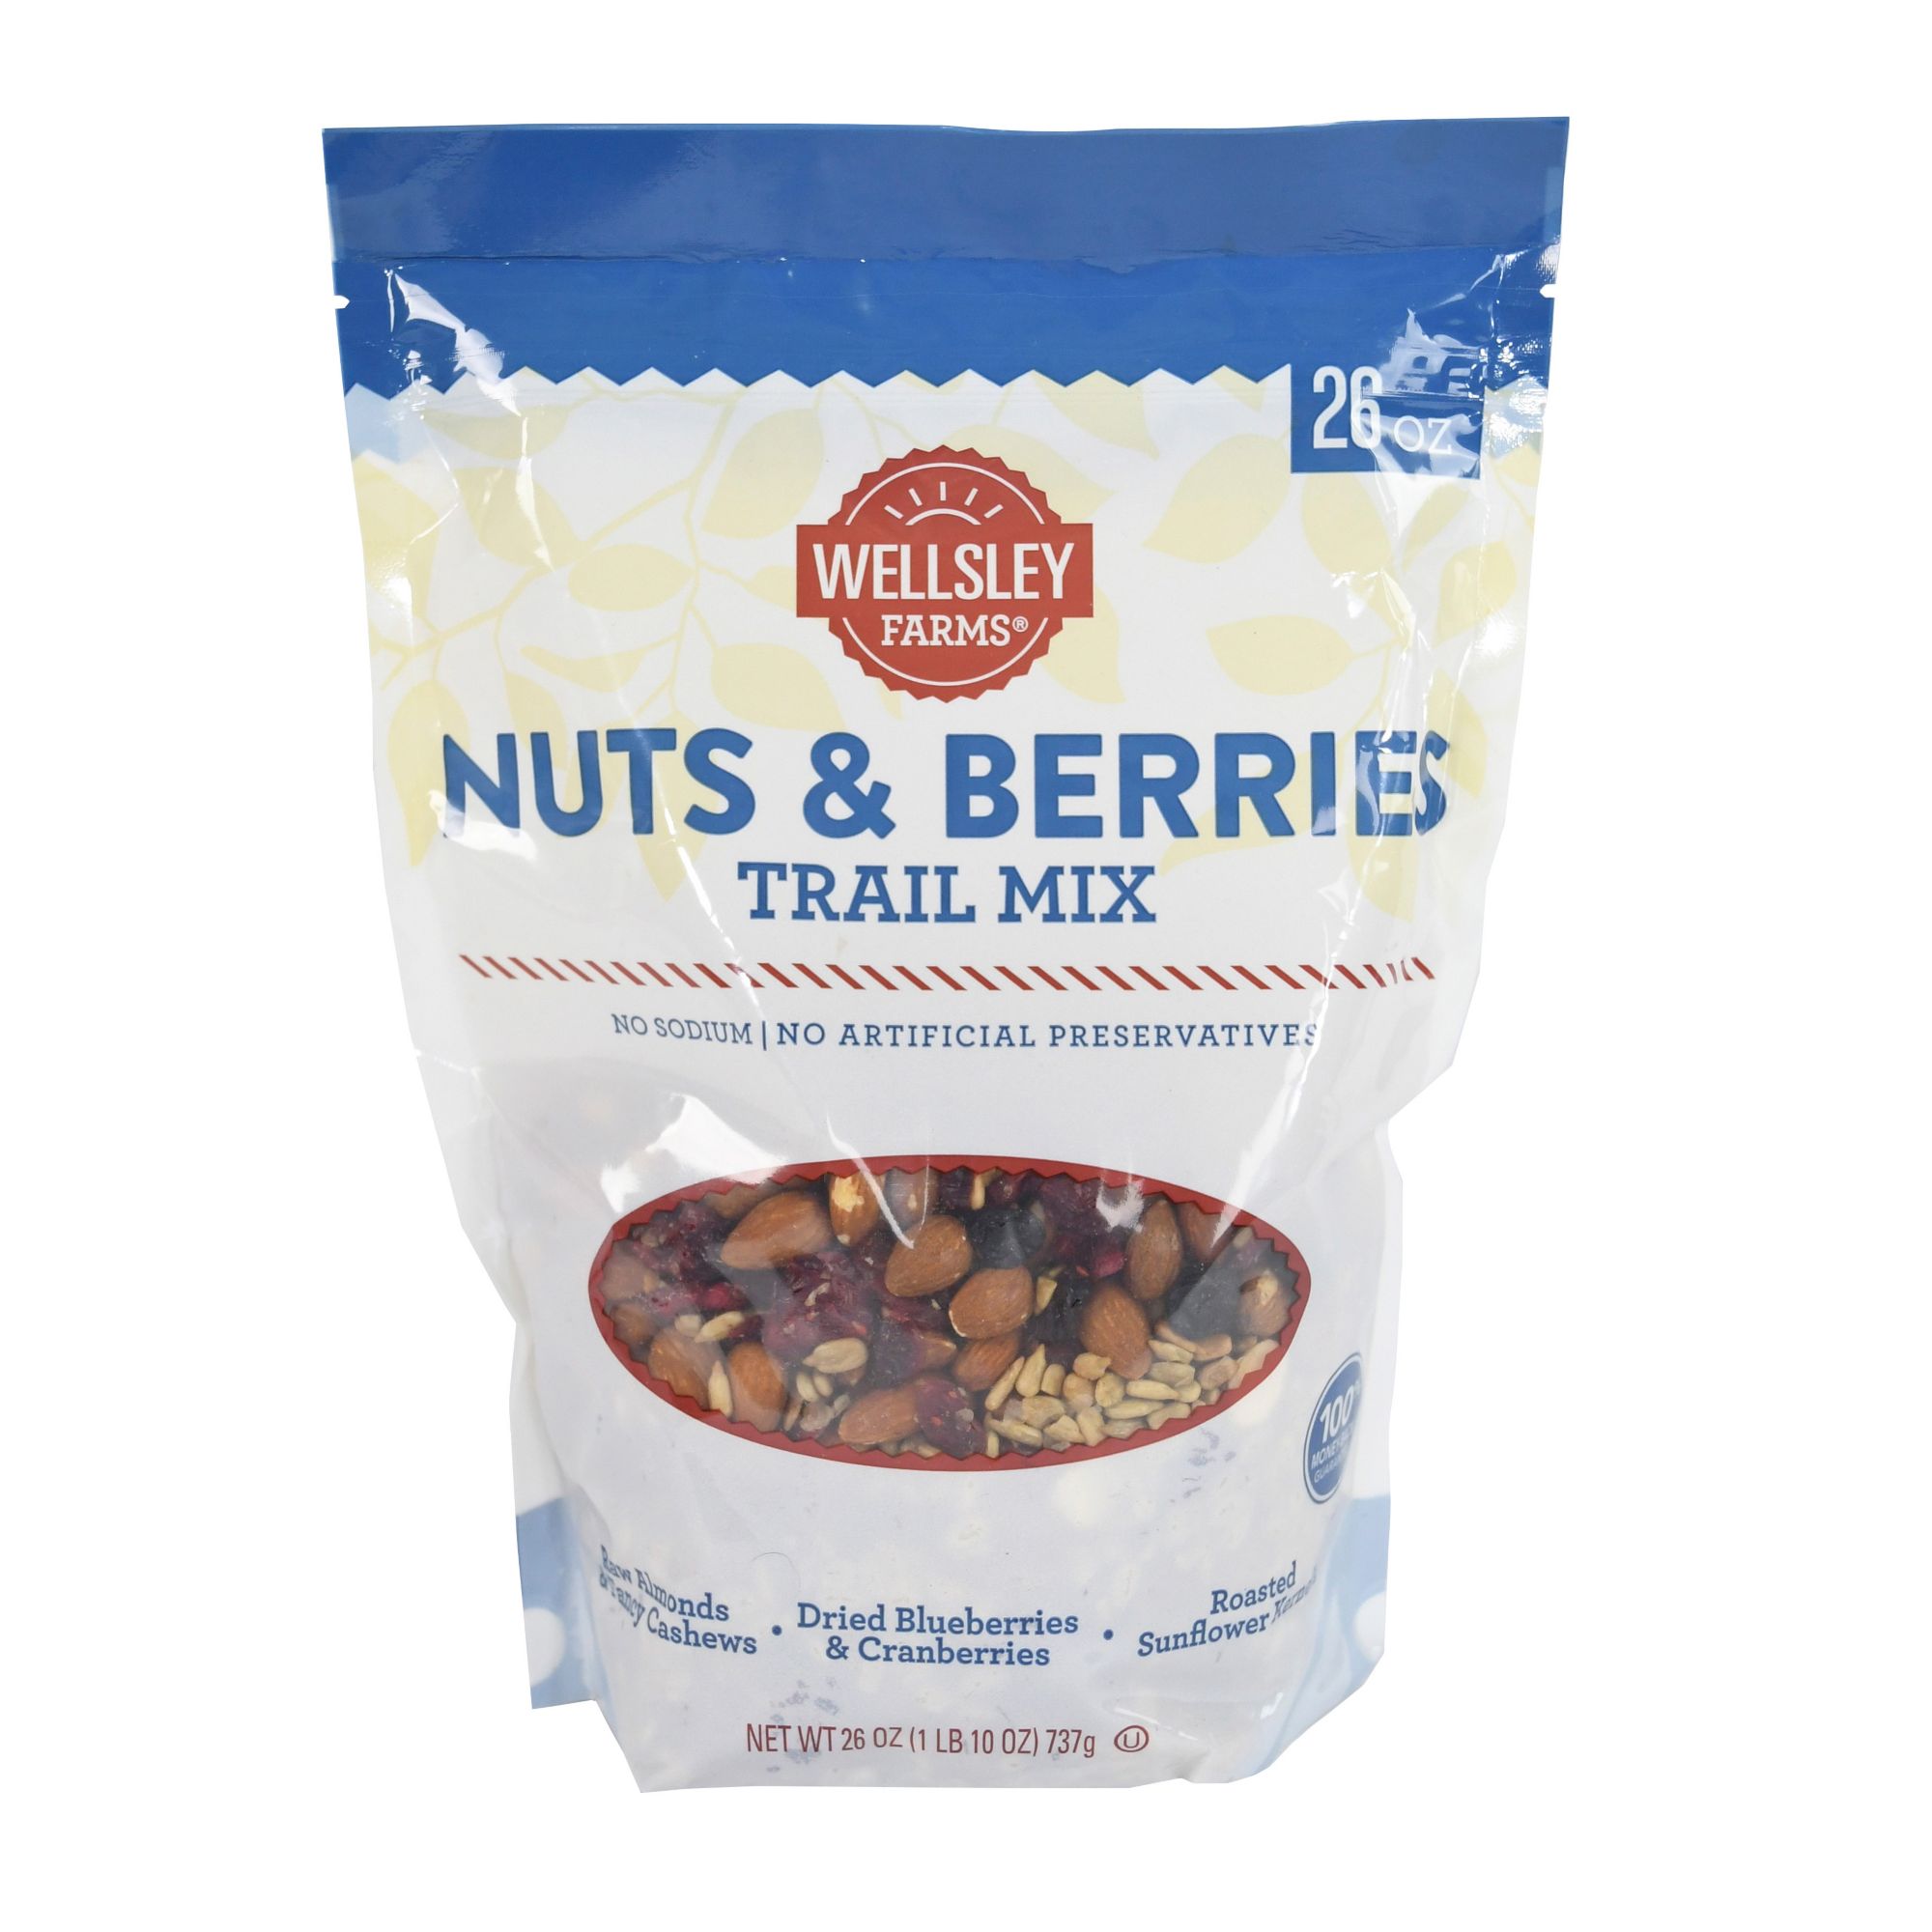 Wellsley Farms Nuts & Berries Trail Mix, 26 oz.